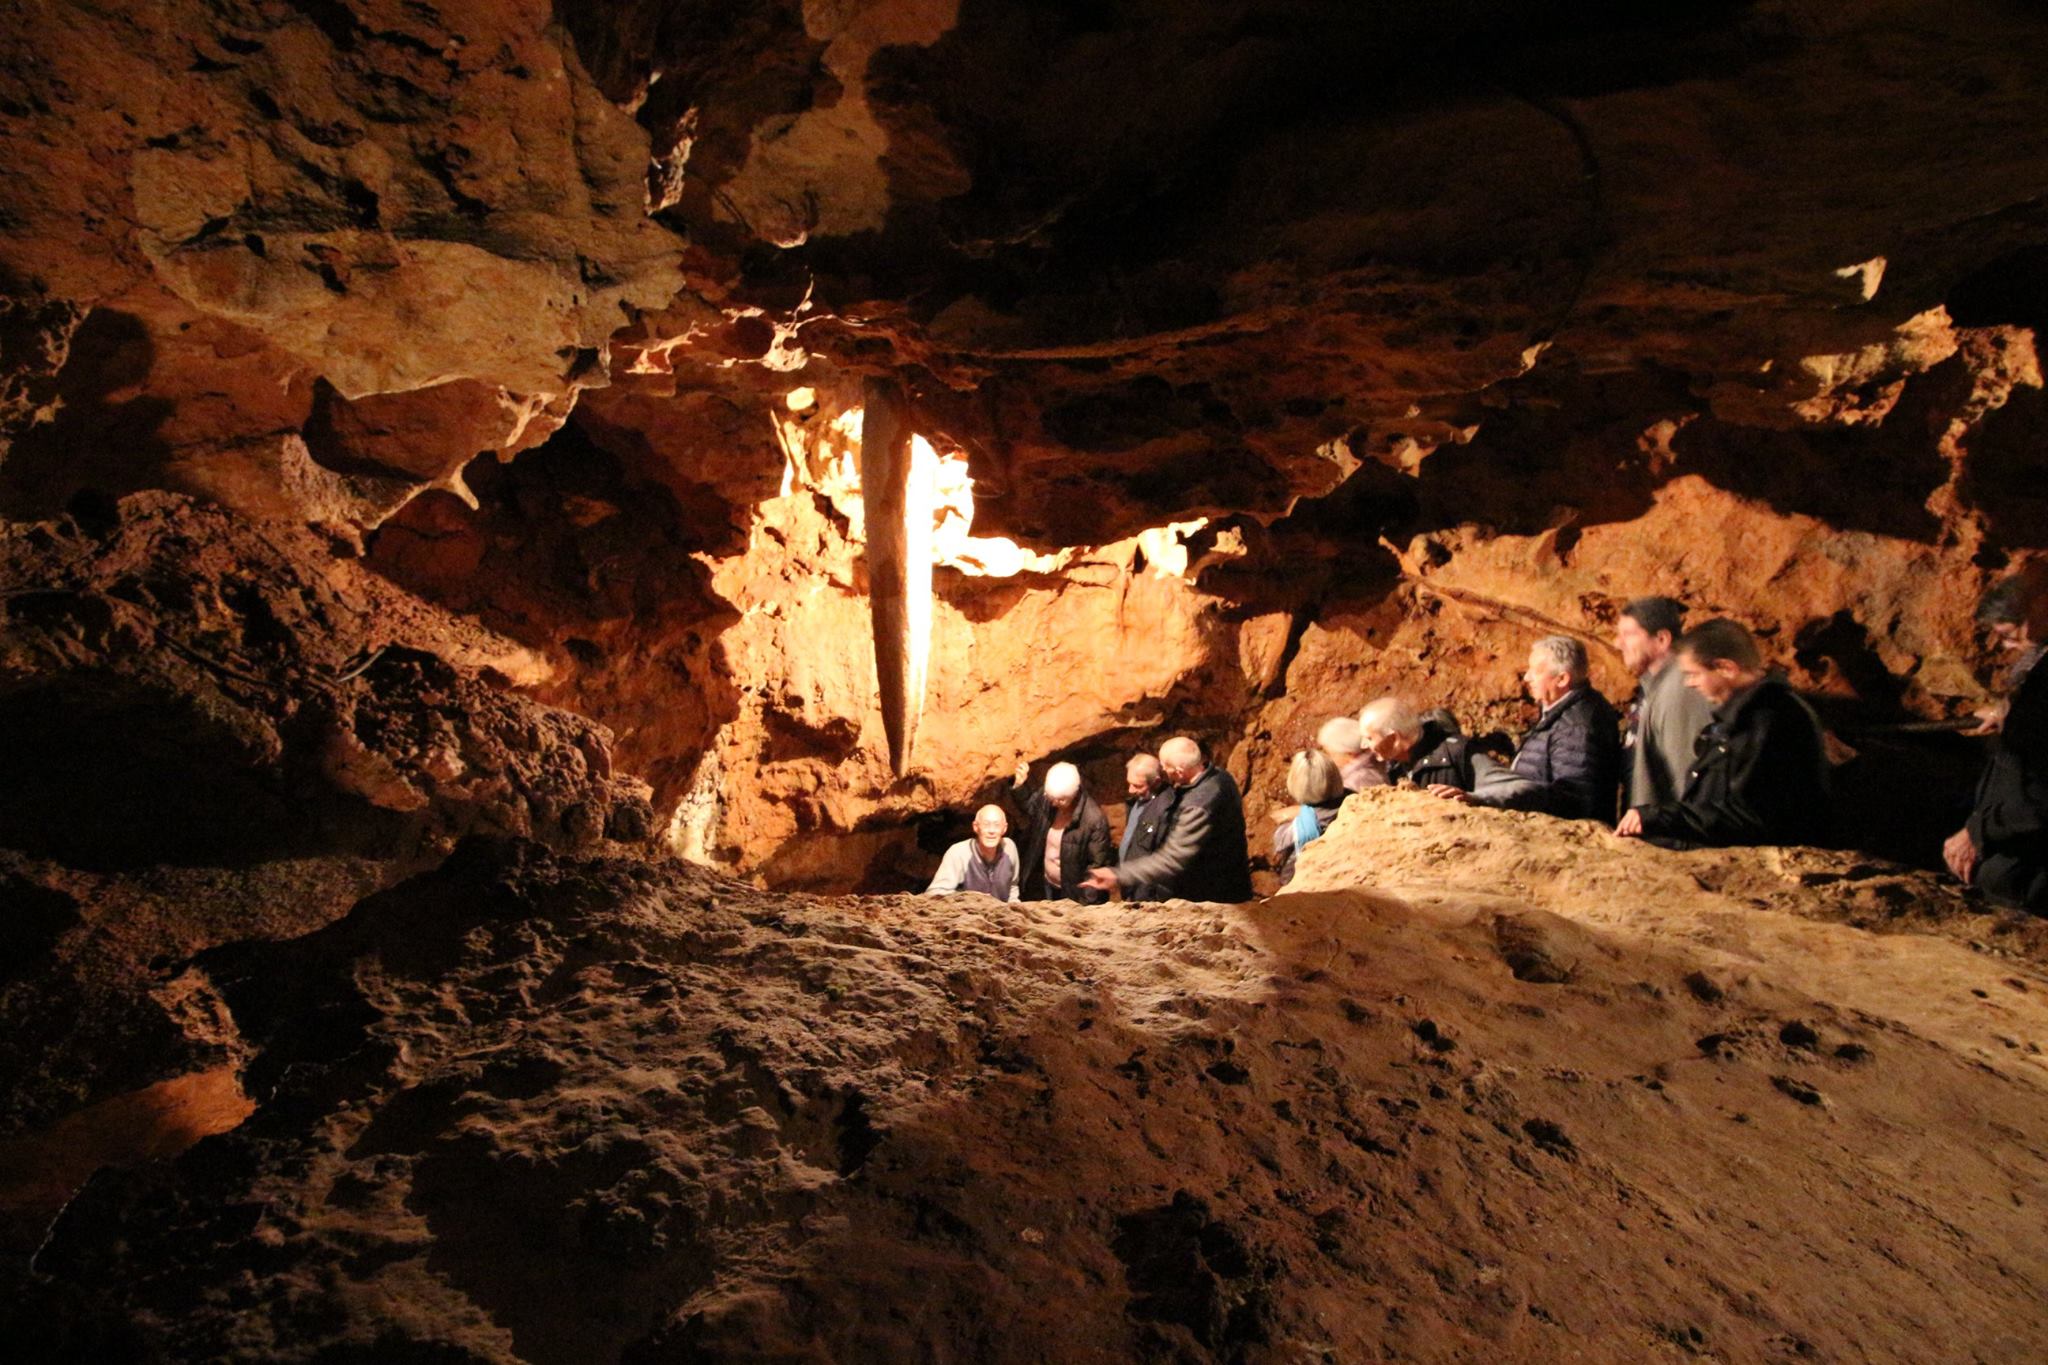 sortie Grotte St Cezaire 2017 notre groupe 40 m sous terre Loic Beraud